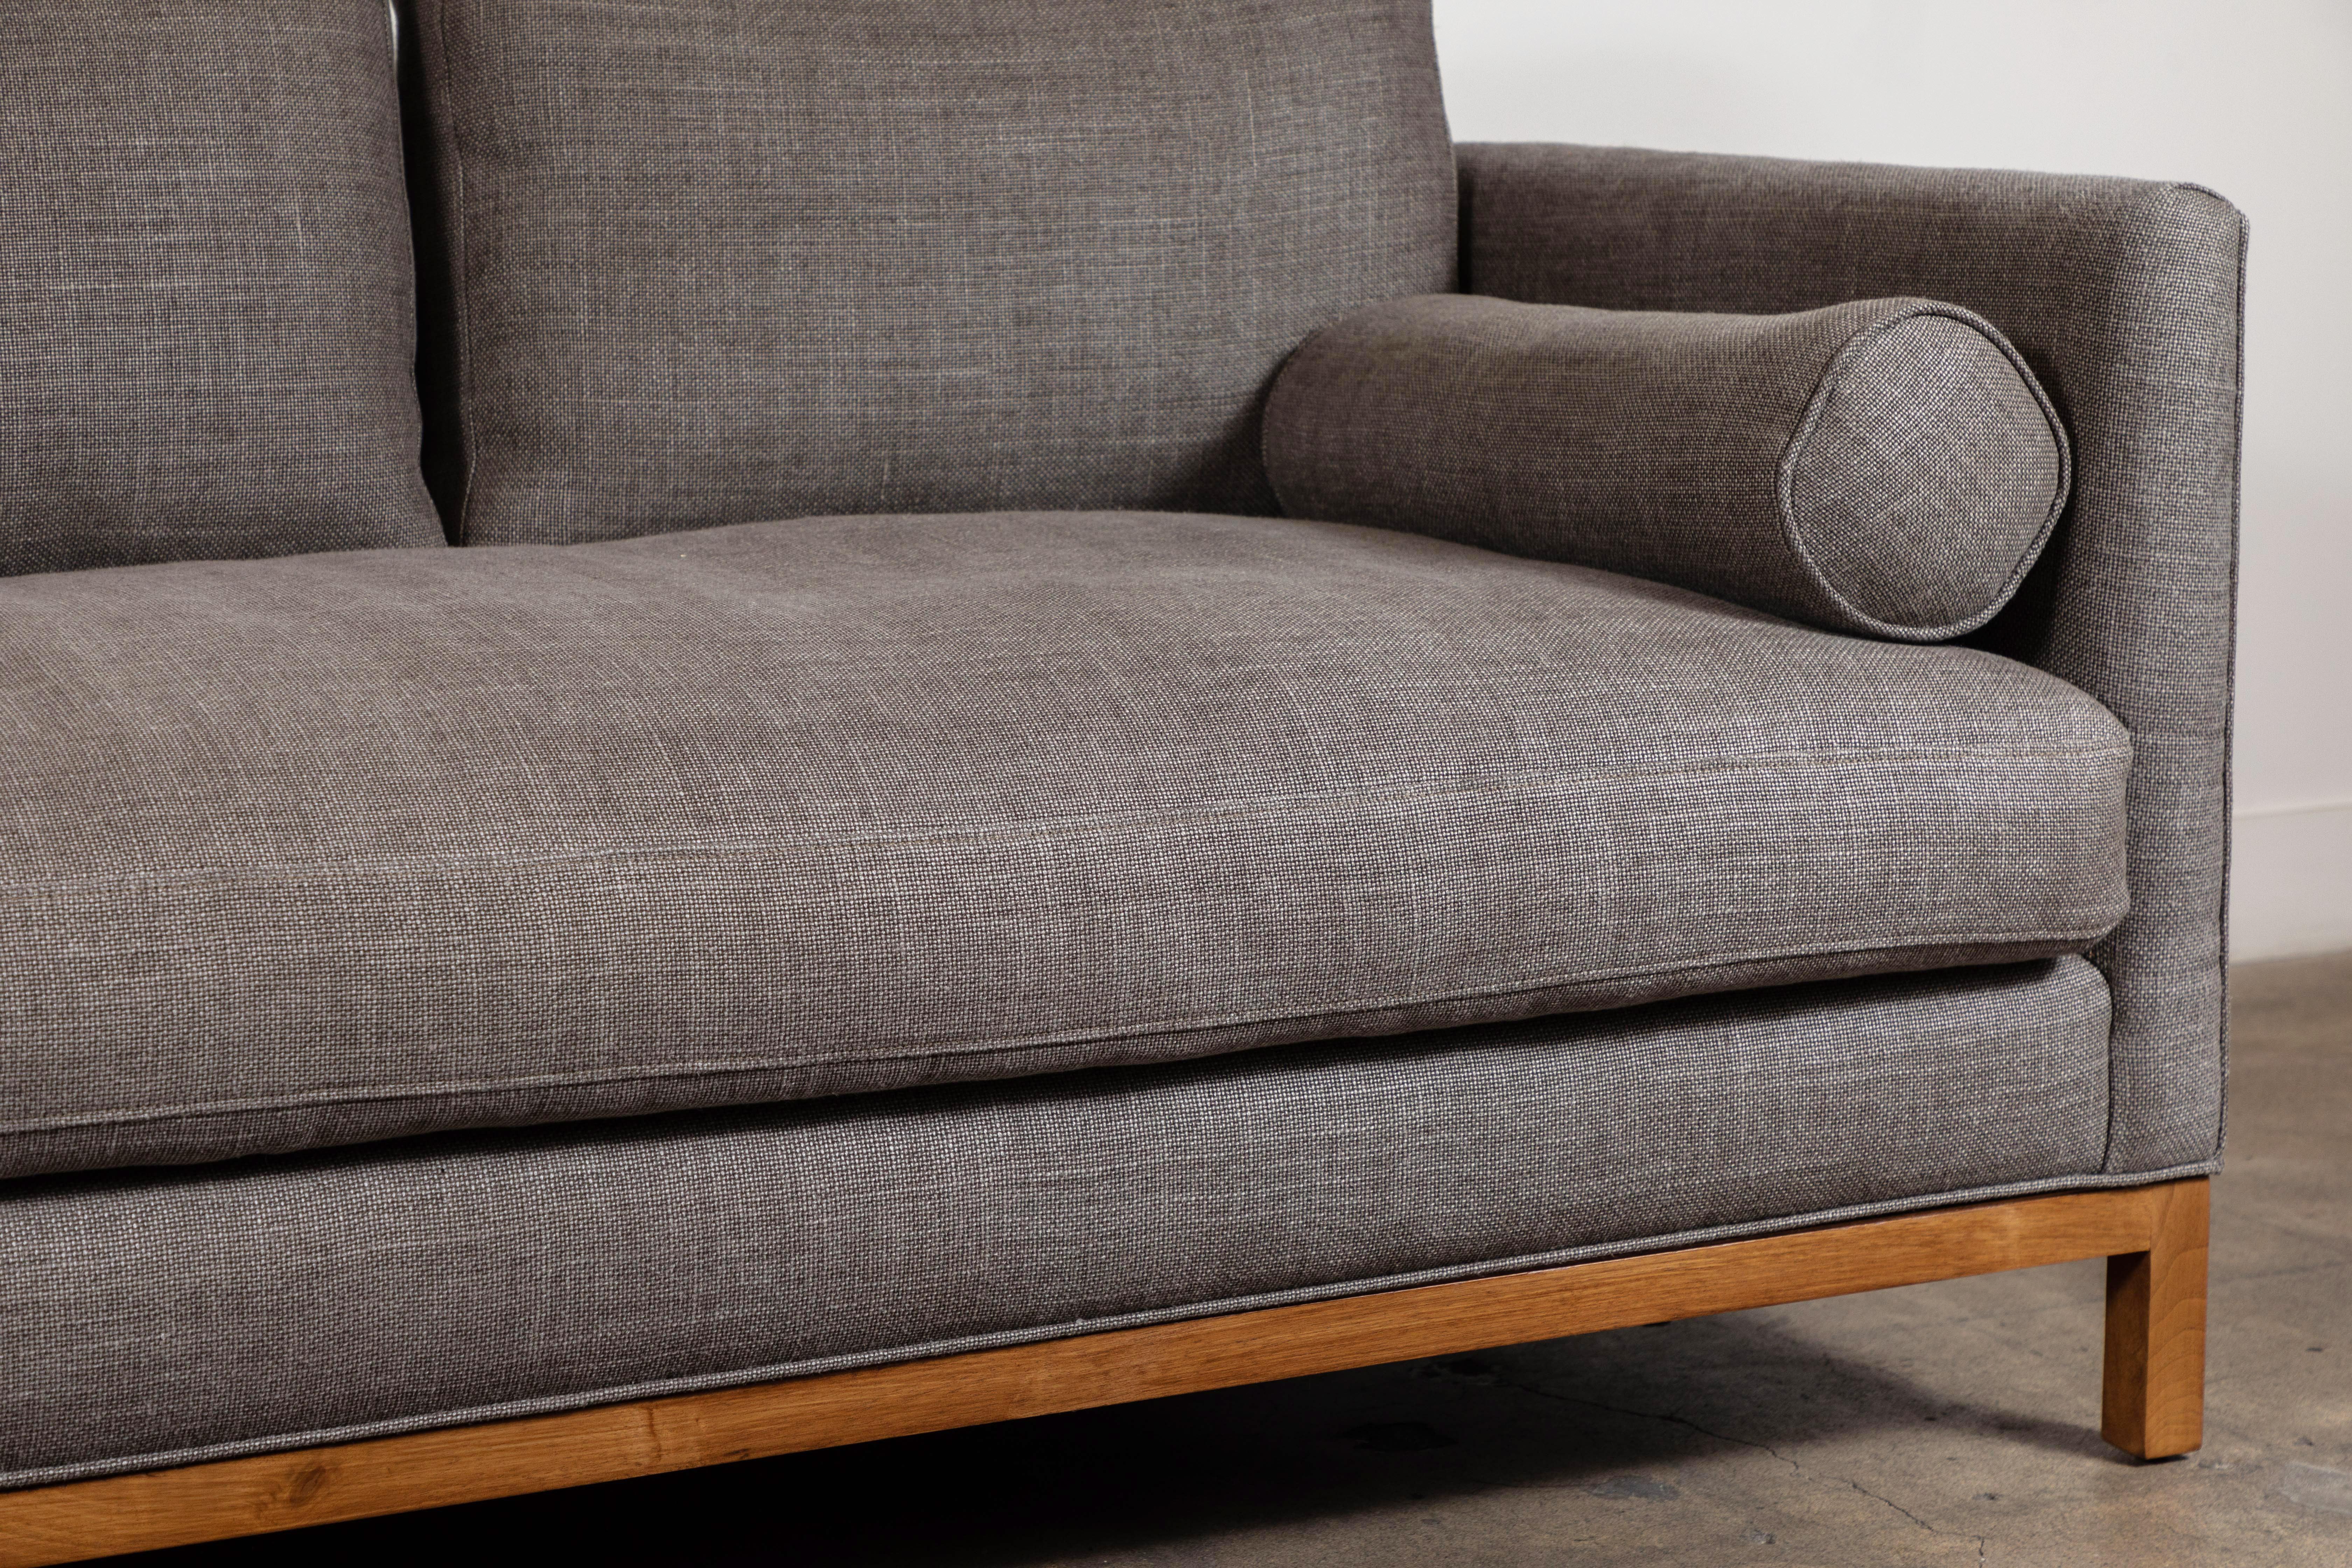 American Curved Back Sofa by Lawson-Fenning